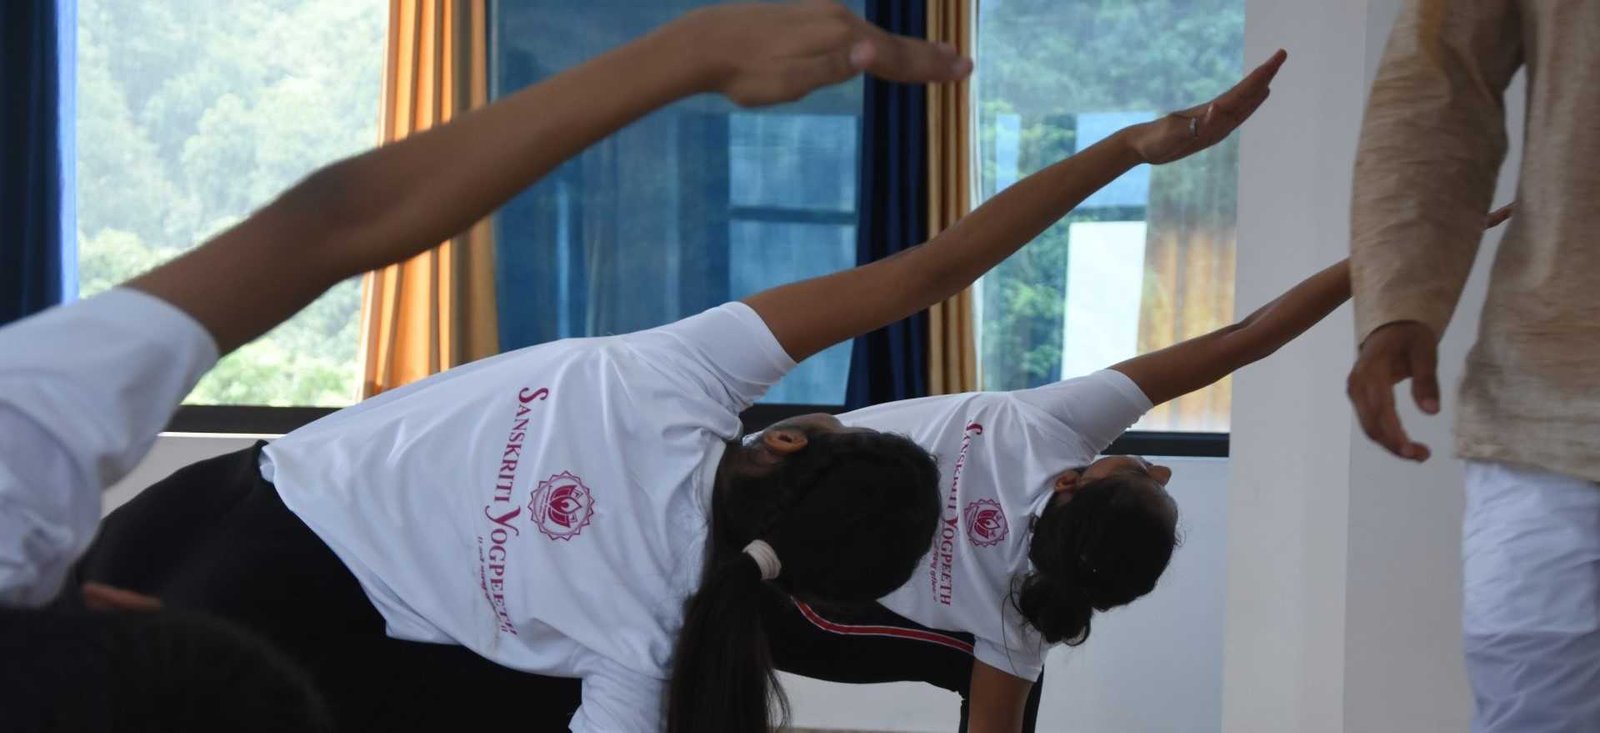 100-hour-beginners-yoga-teacher-training-course